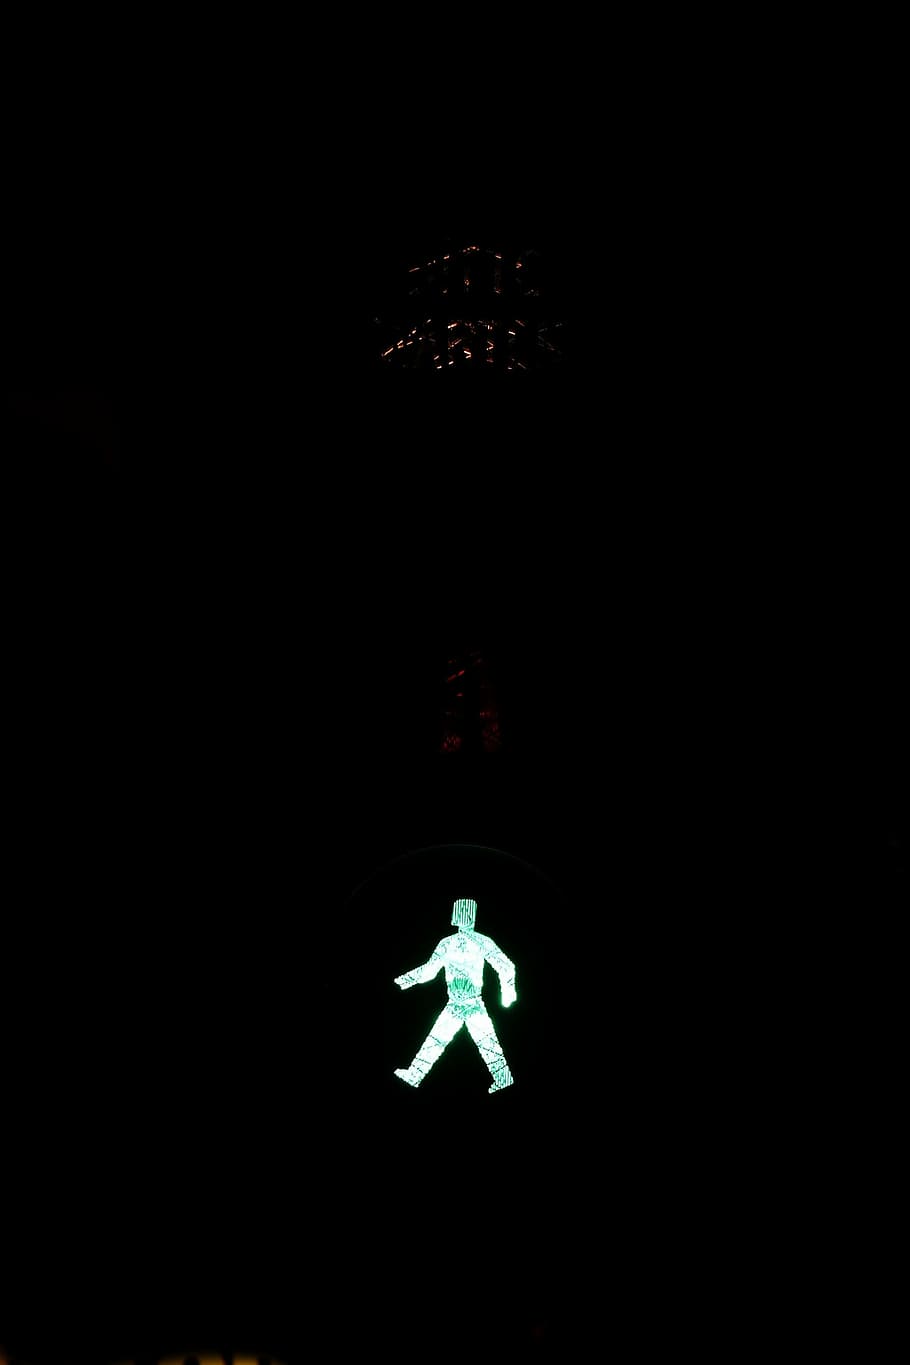 信号, 歩道橋, 緑, 行く, 交通信号, 男性, 小さな緑の男, 光信号, 道路標識, 道路